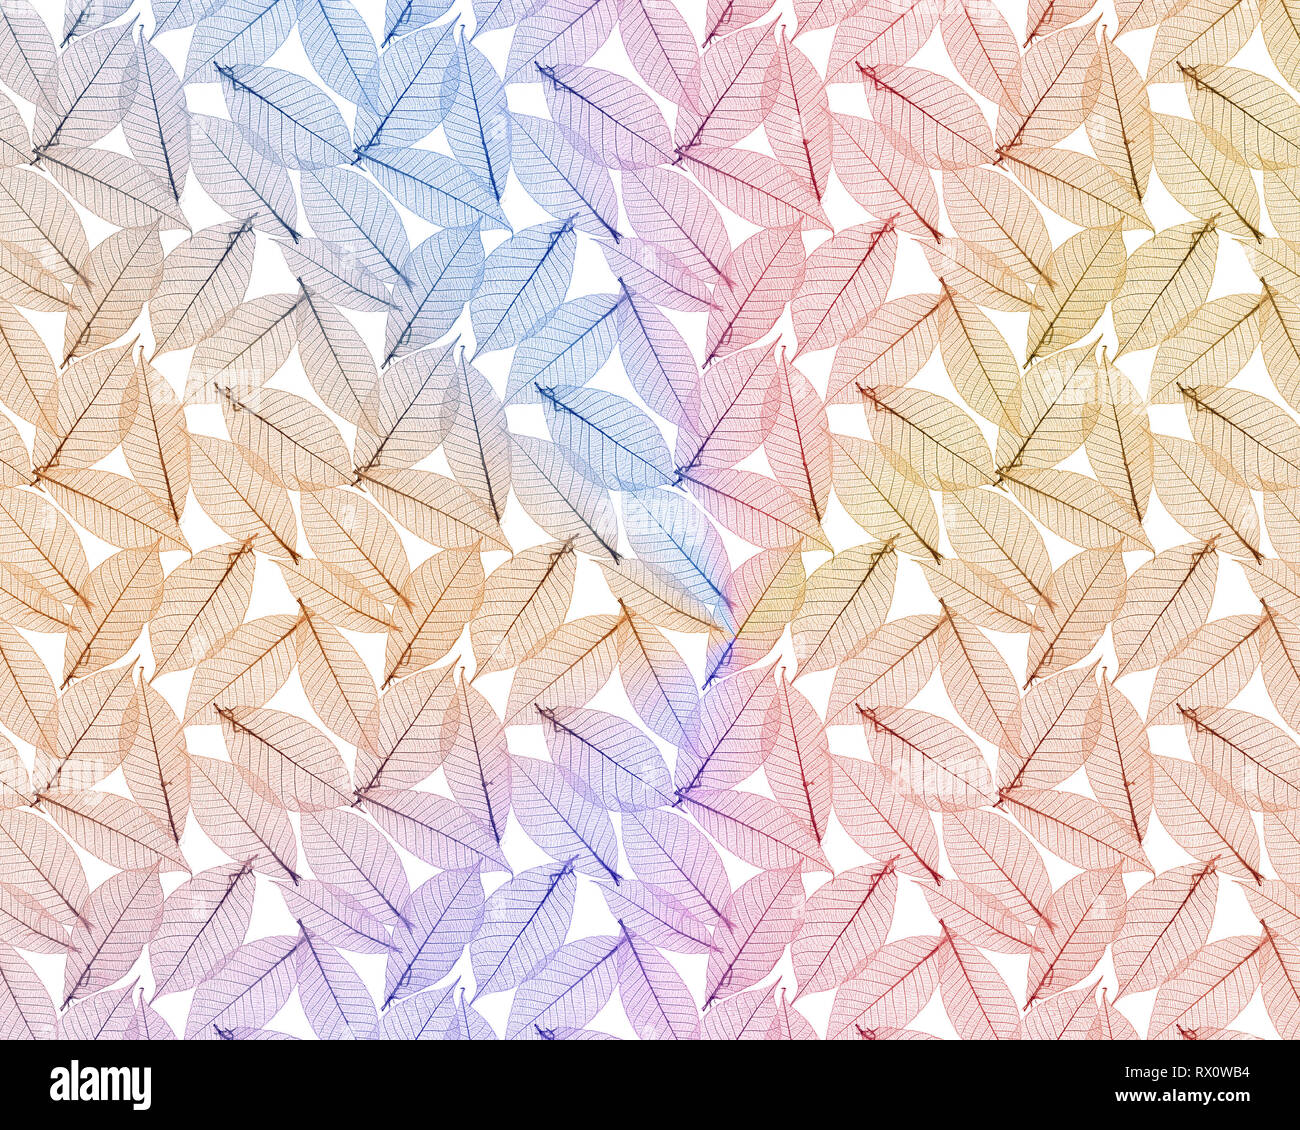 Zusammenfassung Hintergrund von empfindlichen und detaillierte Blätter in weichen Pastellfarben Stockfoto